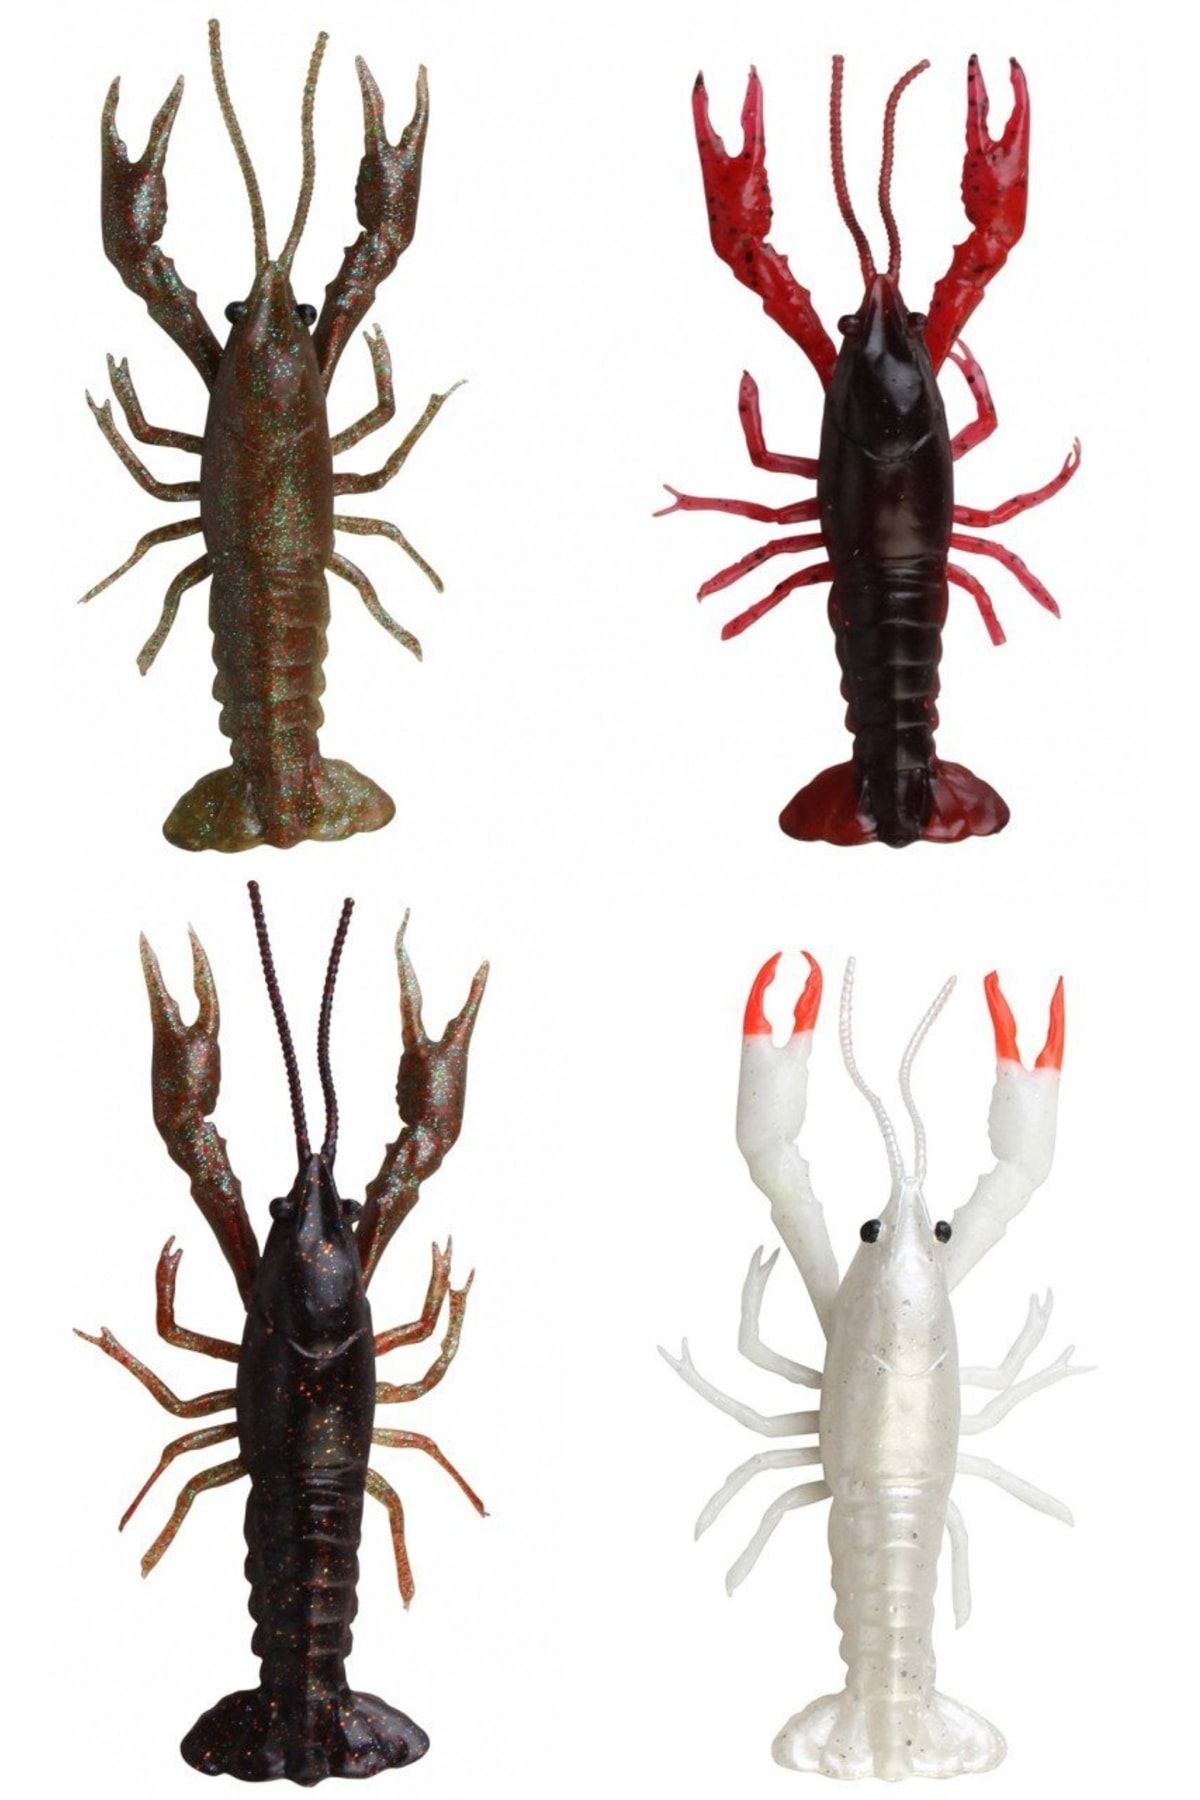 Genel Markalar Lb 3d Crayfish 8 Cm 4 Gr F 4 Adet Suni Yem Black Brown